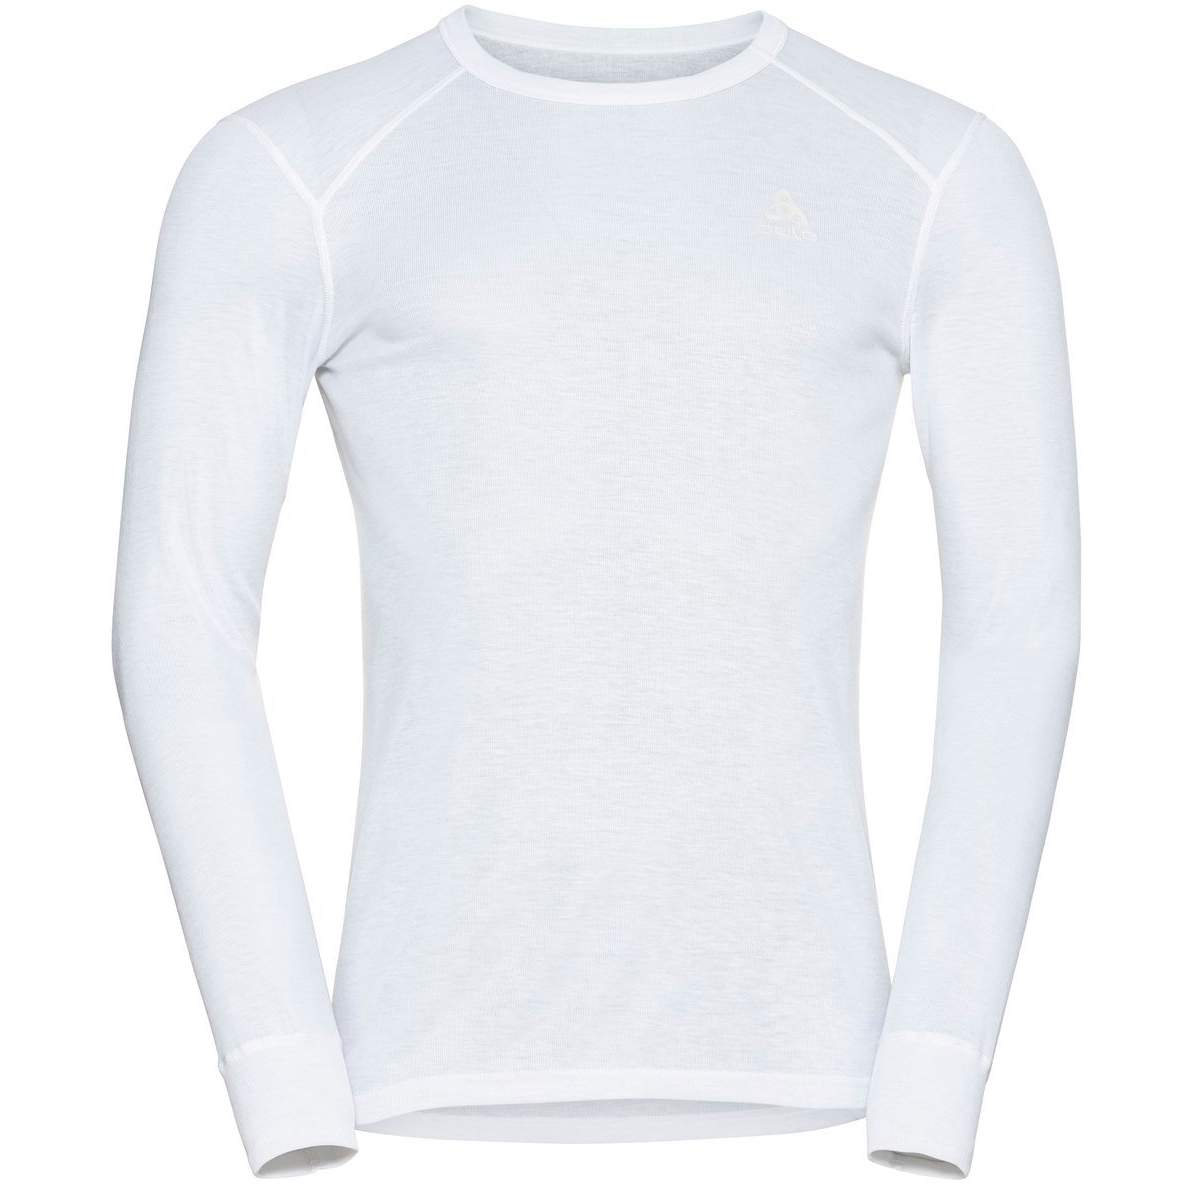 Produktbild von Odlo Active Warm Langarm-Unterhemd Herren - weiß